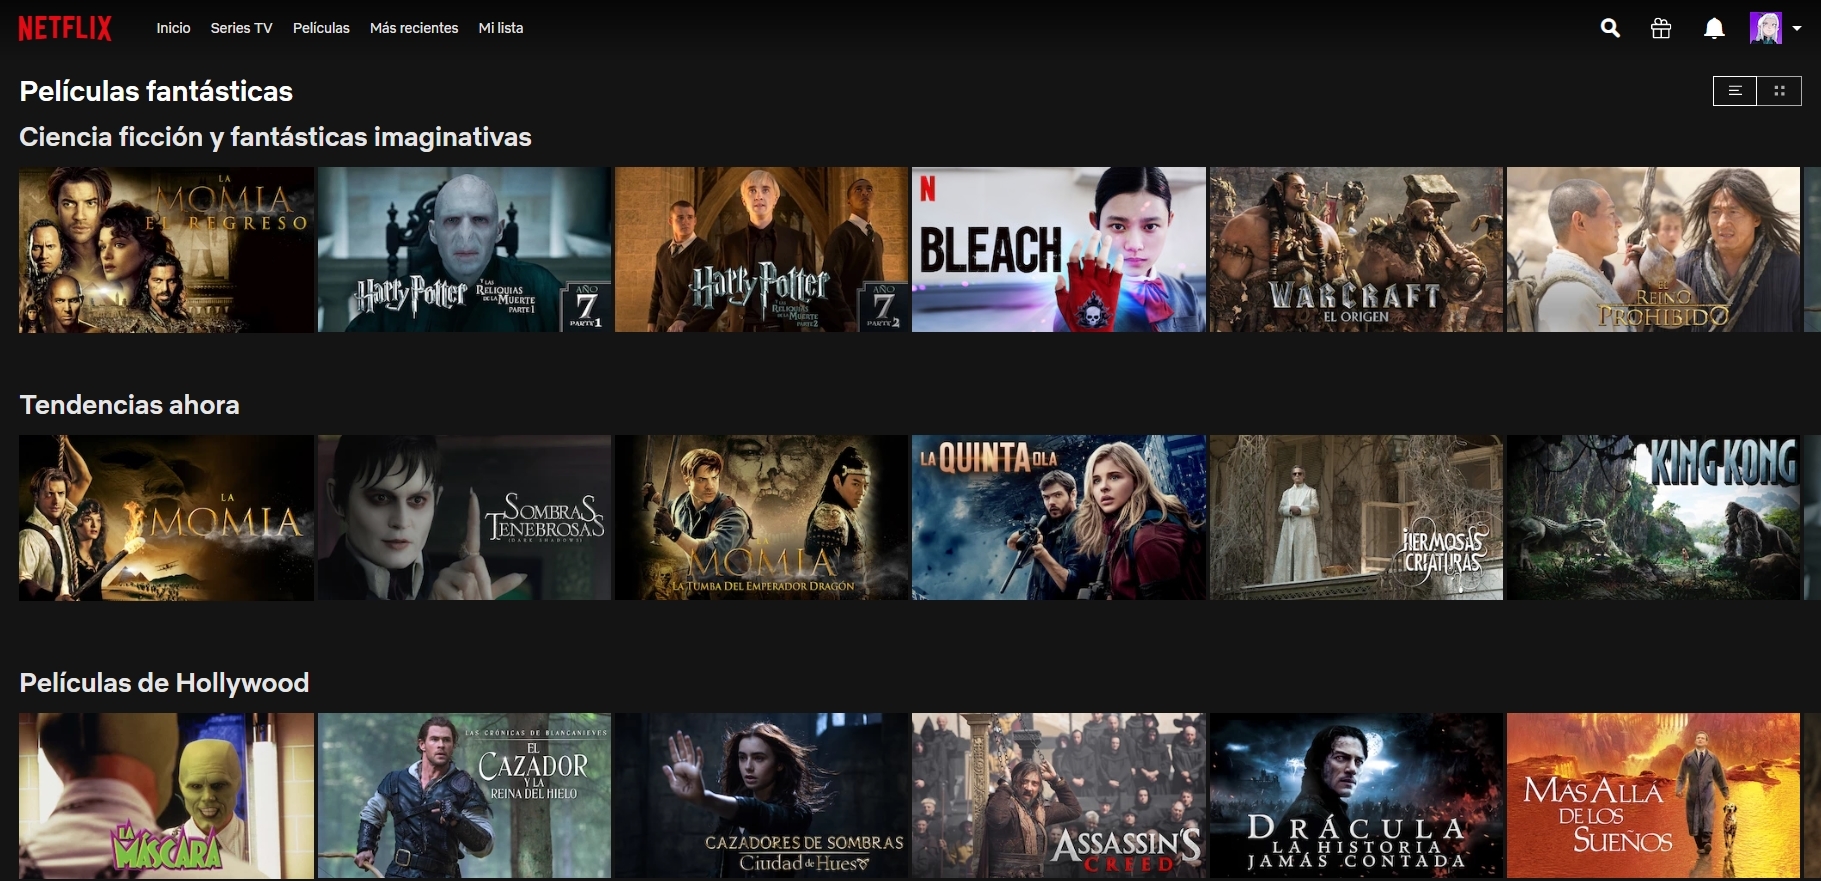 Las Mejores Series De Netflix 2020 Para Ninos